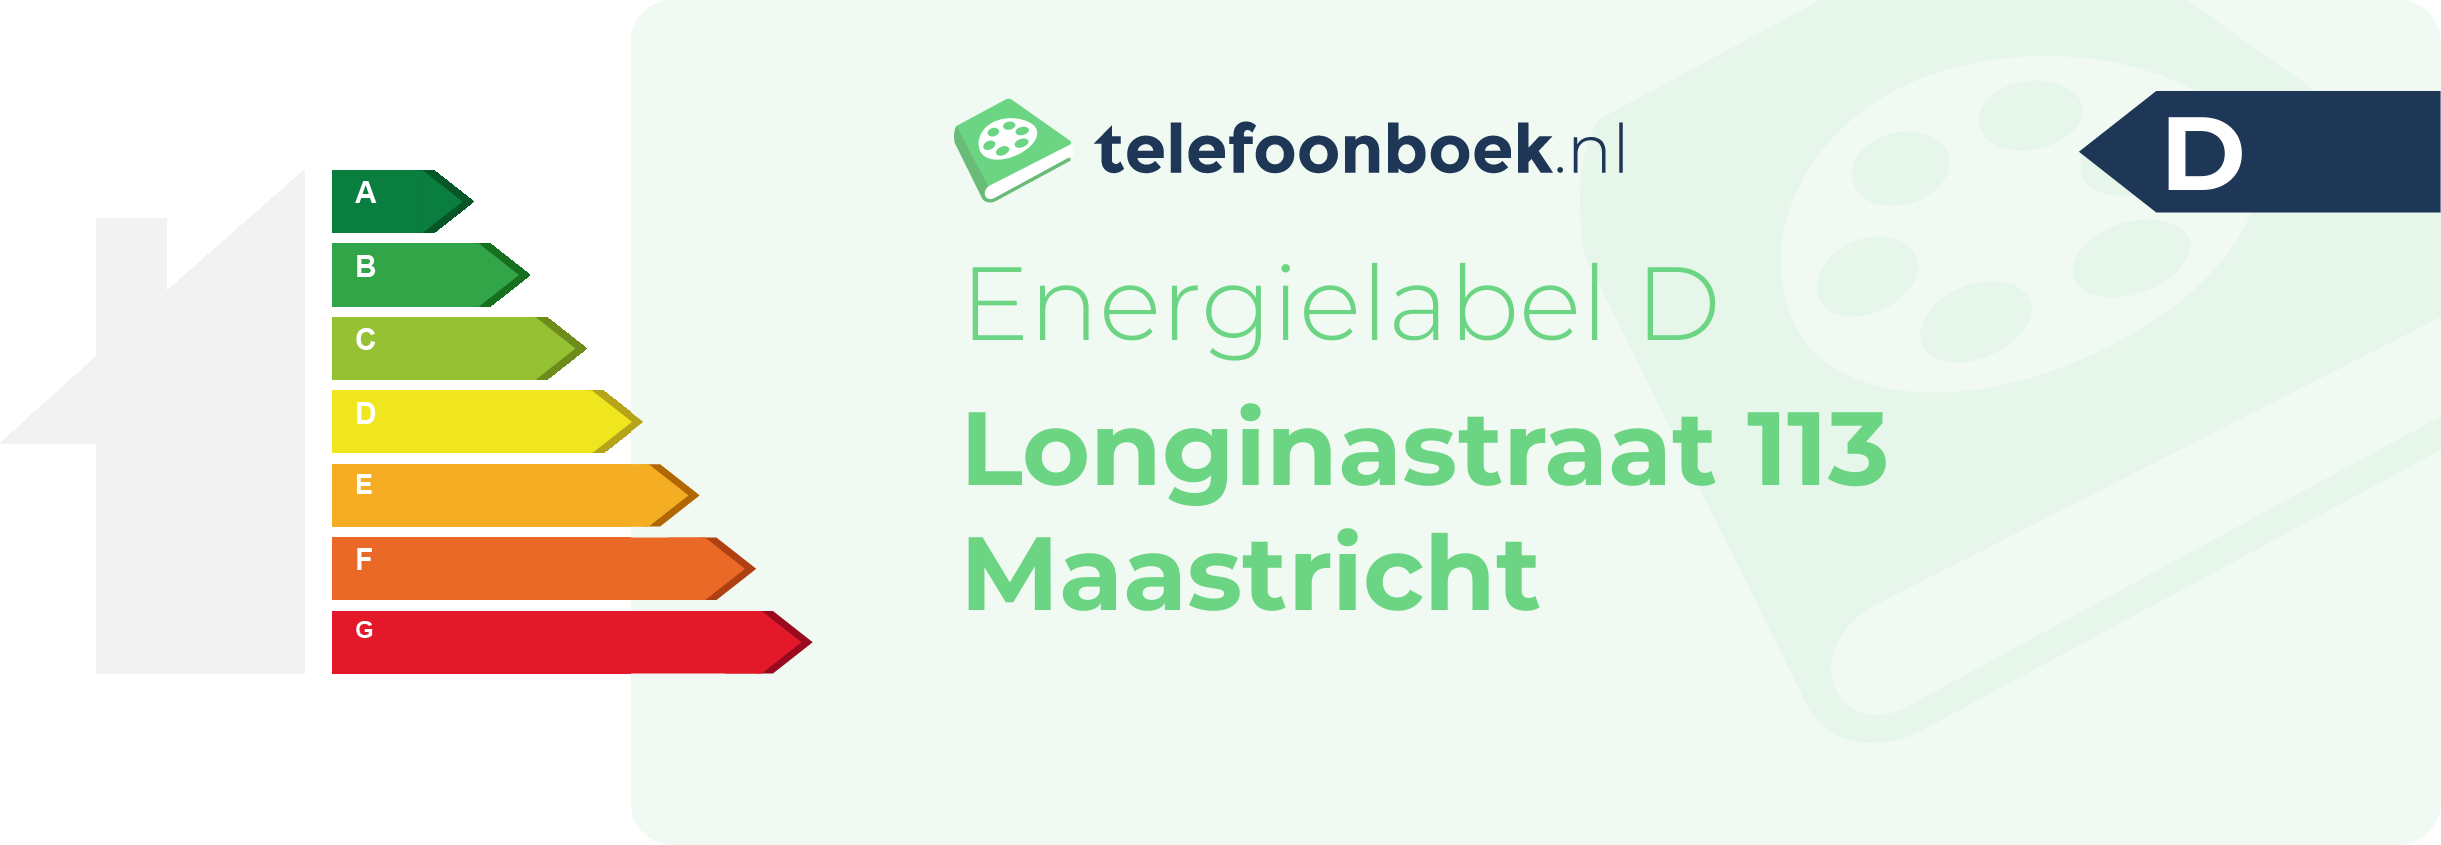 Energielabel Longinastraat 113 Maastricht